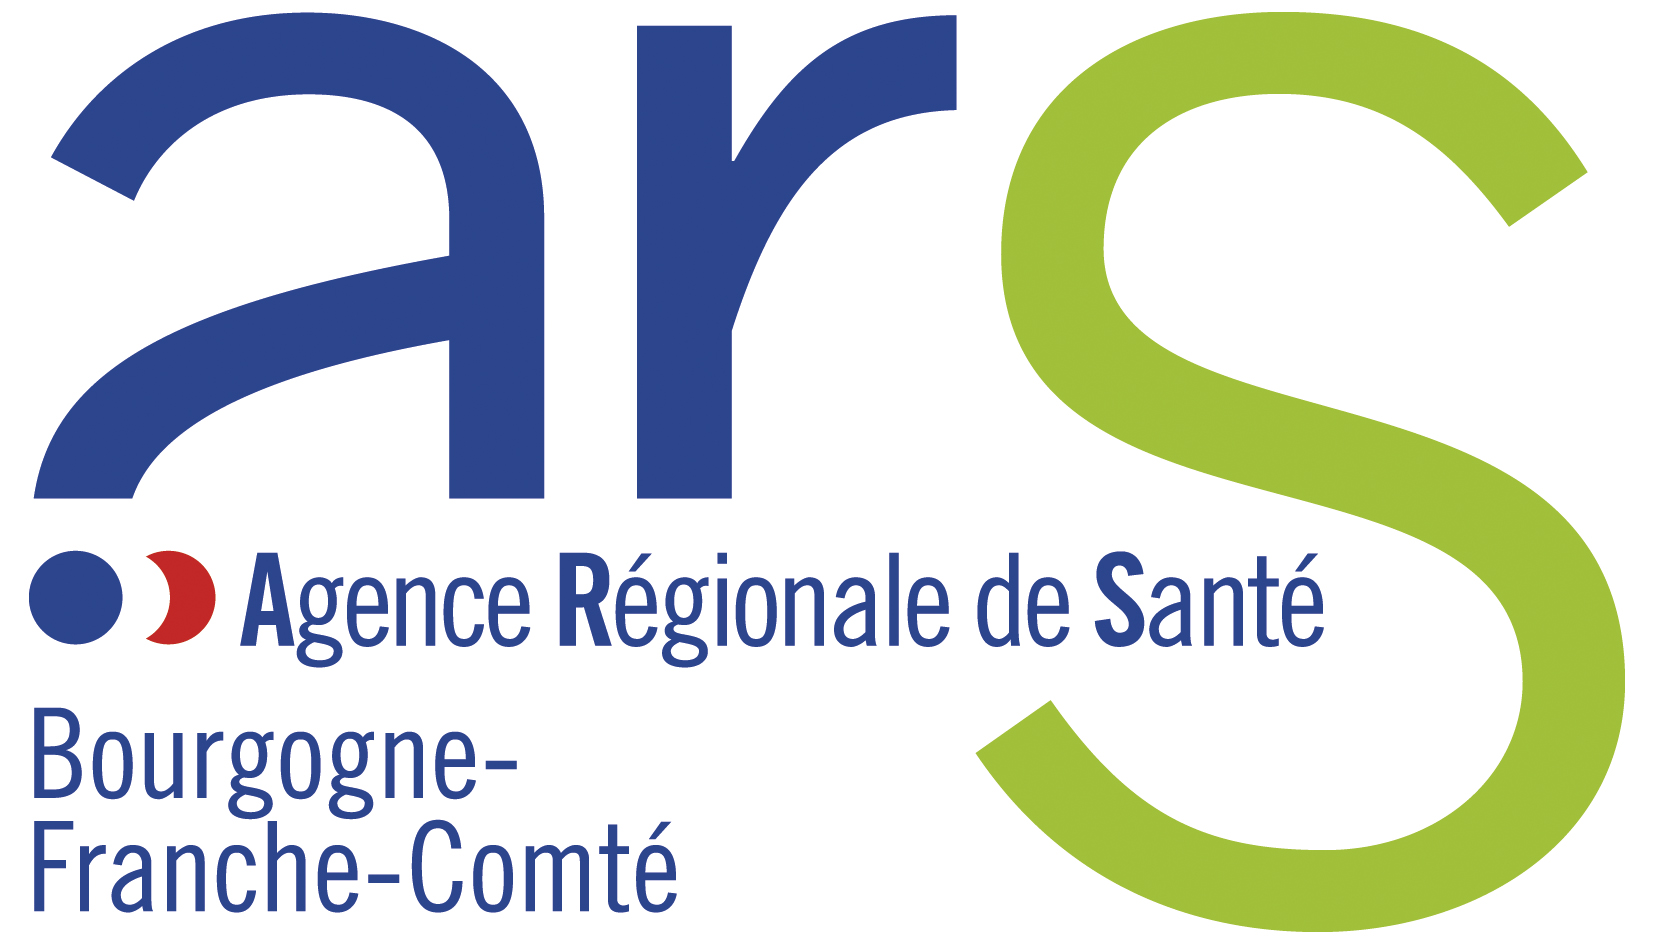 agence régionale de santé ars bourgogne franche comté logo